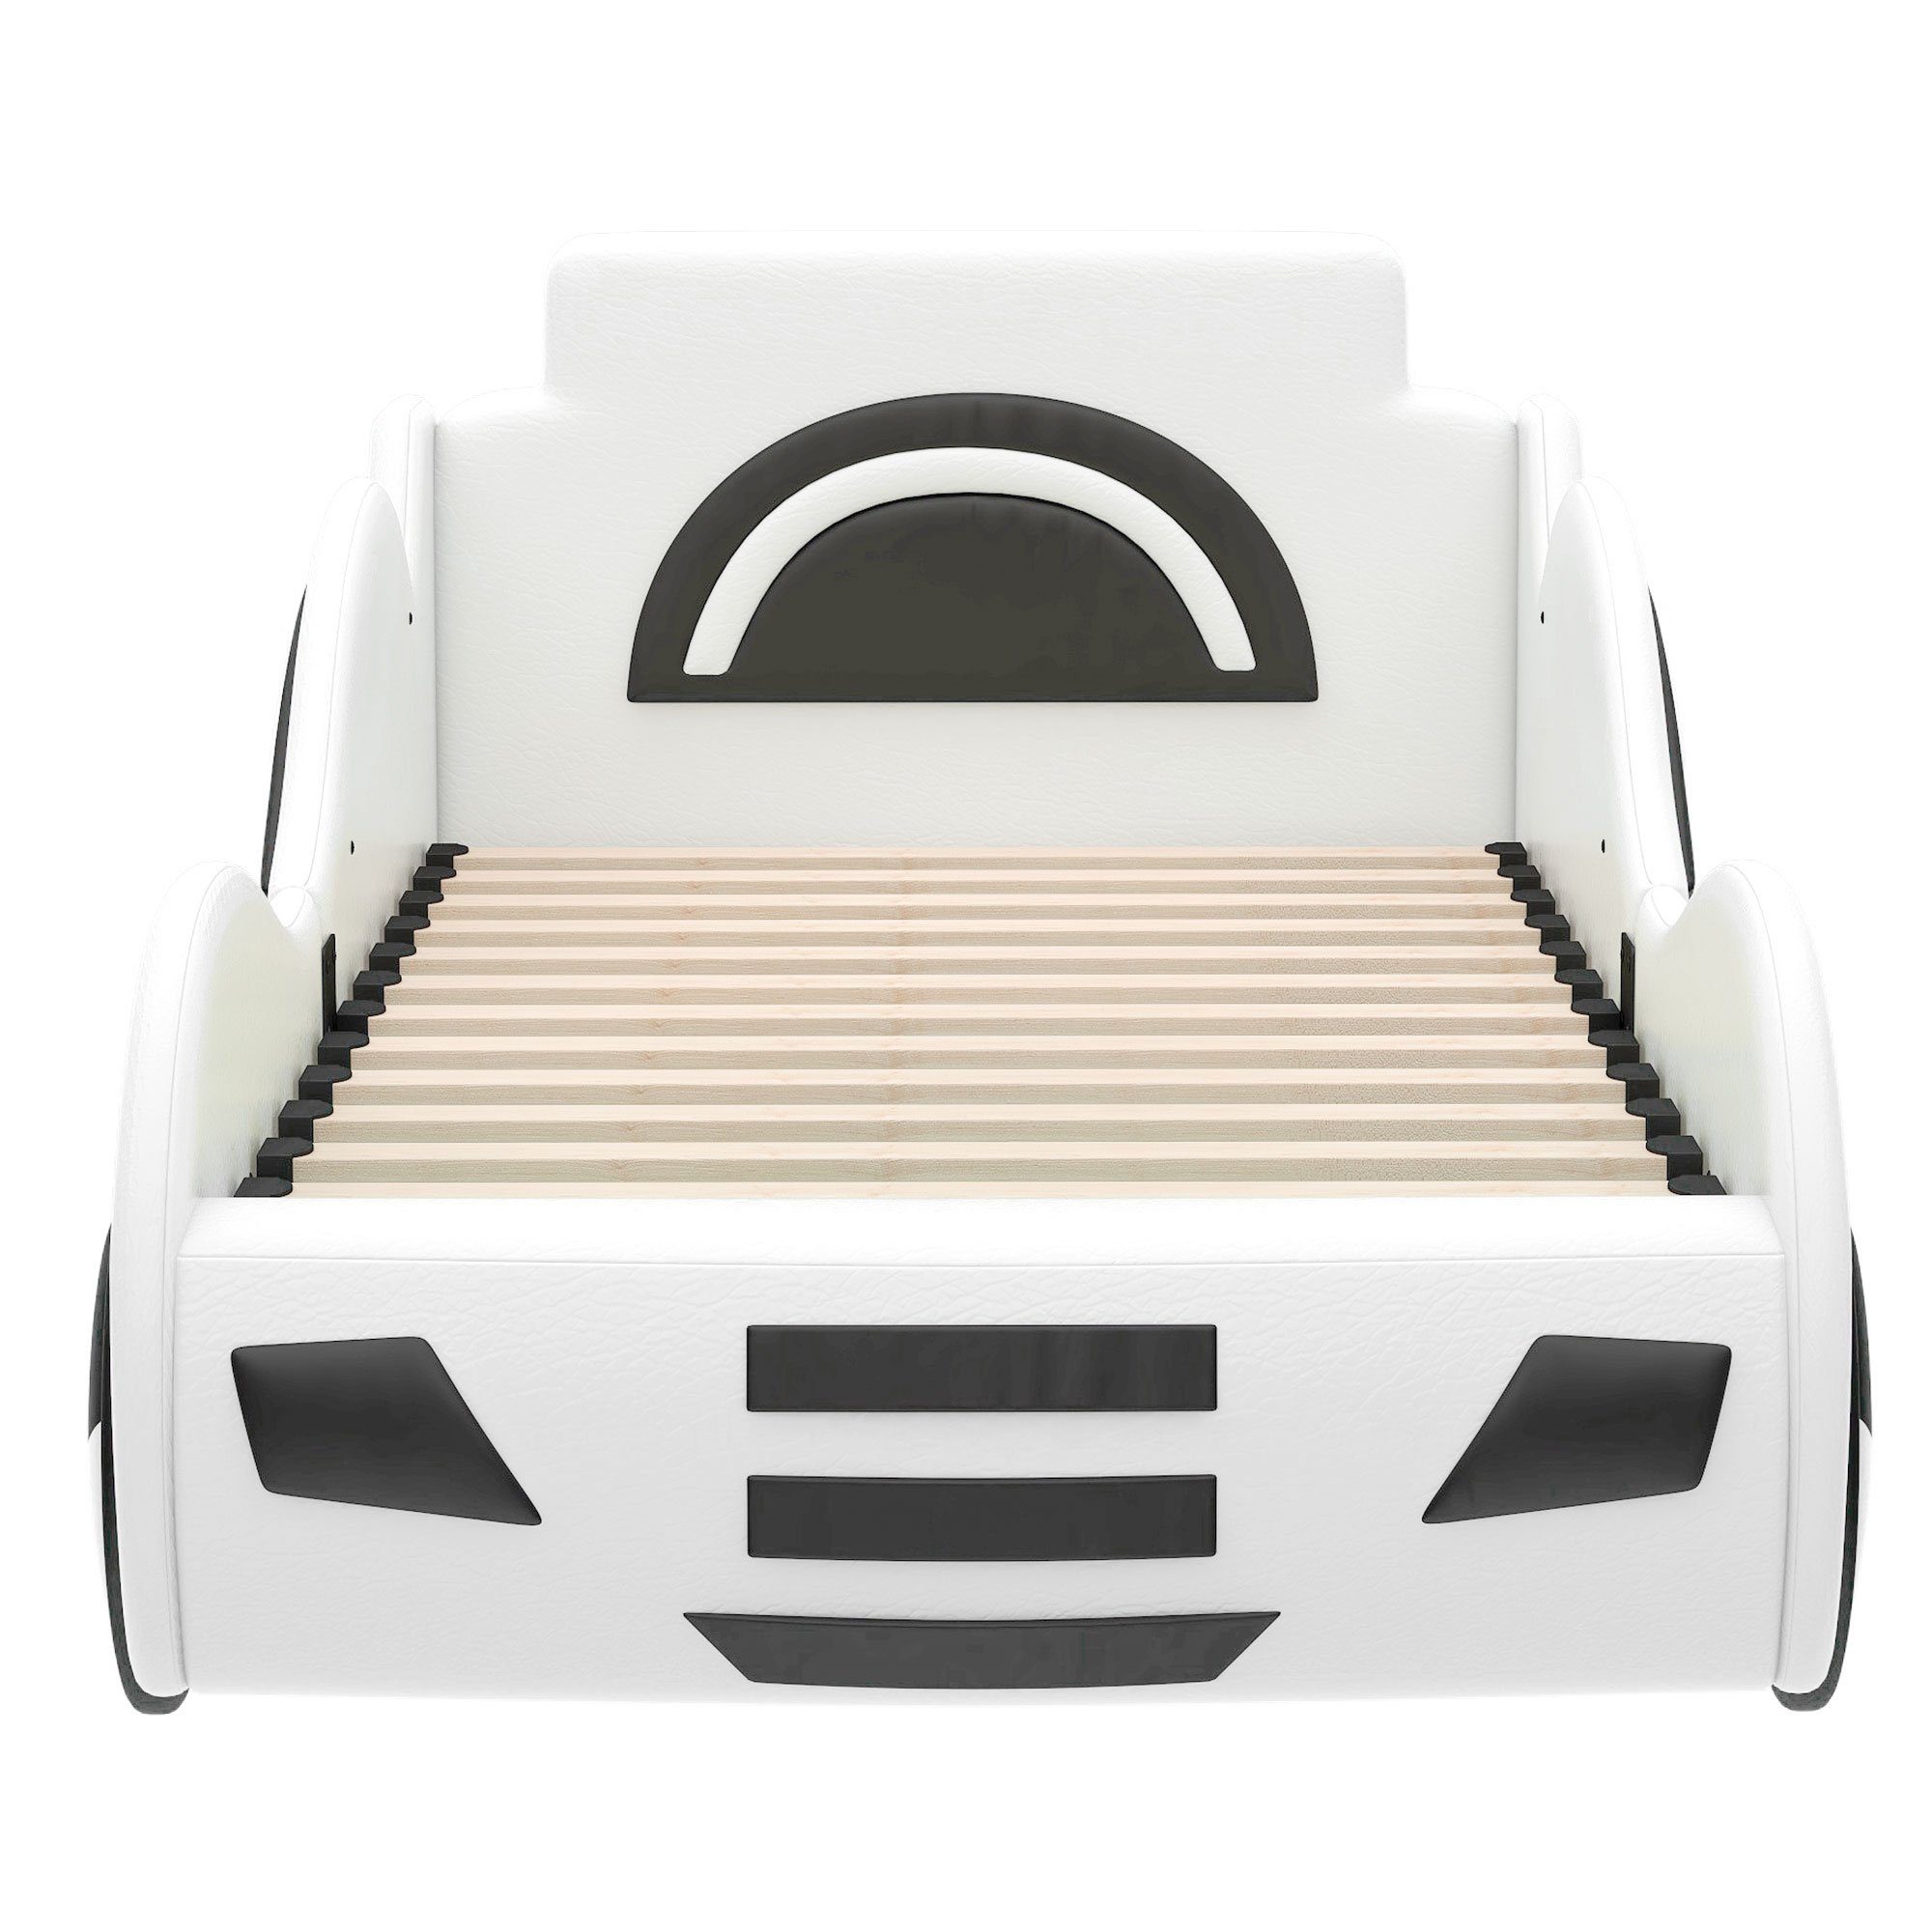 Kunstleder Hydraulisches Stauraum mit Flieks 90×200cm Weiß Kinderbett Autobett, Spielbett